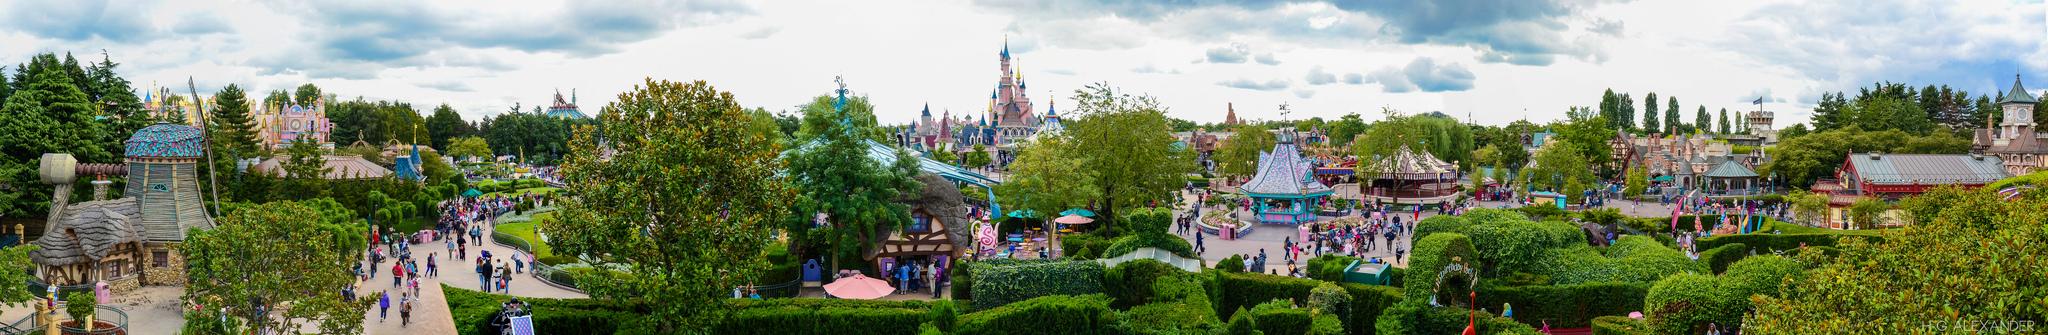 Disney Land Paris Top 5 Theme Parks